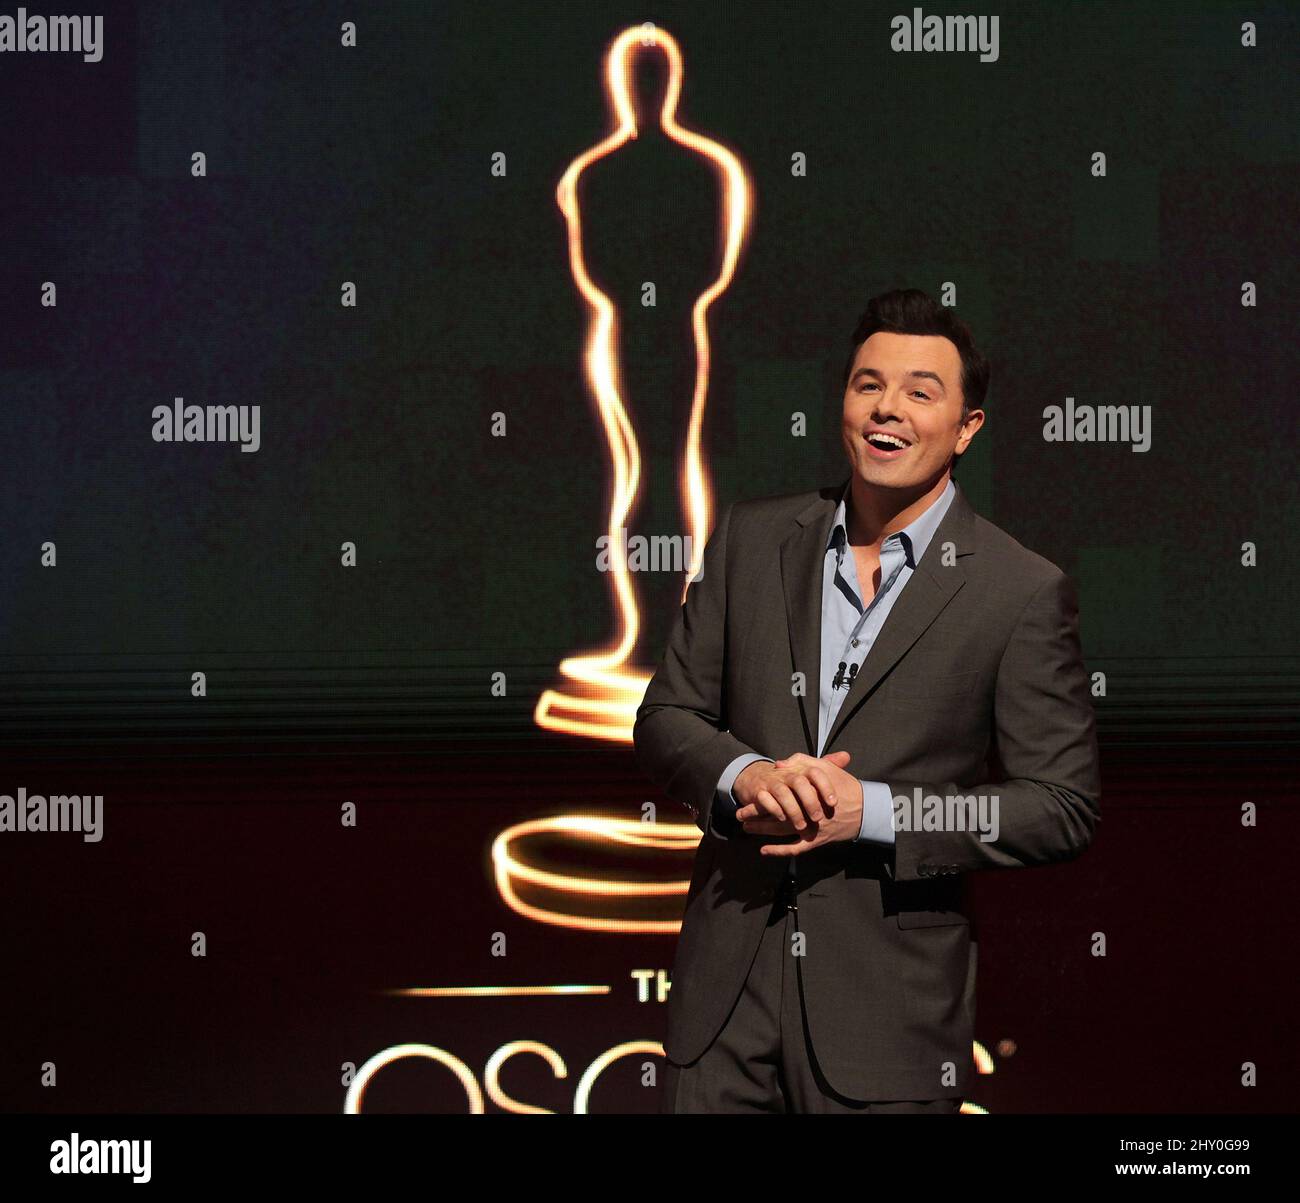 2013 Oscars Gastgeber Seth MacFarlane präsentiert die Academy Nominierungen für die Academy Awards 85. im Academy Theatre, Los Angeles. Stockfoto